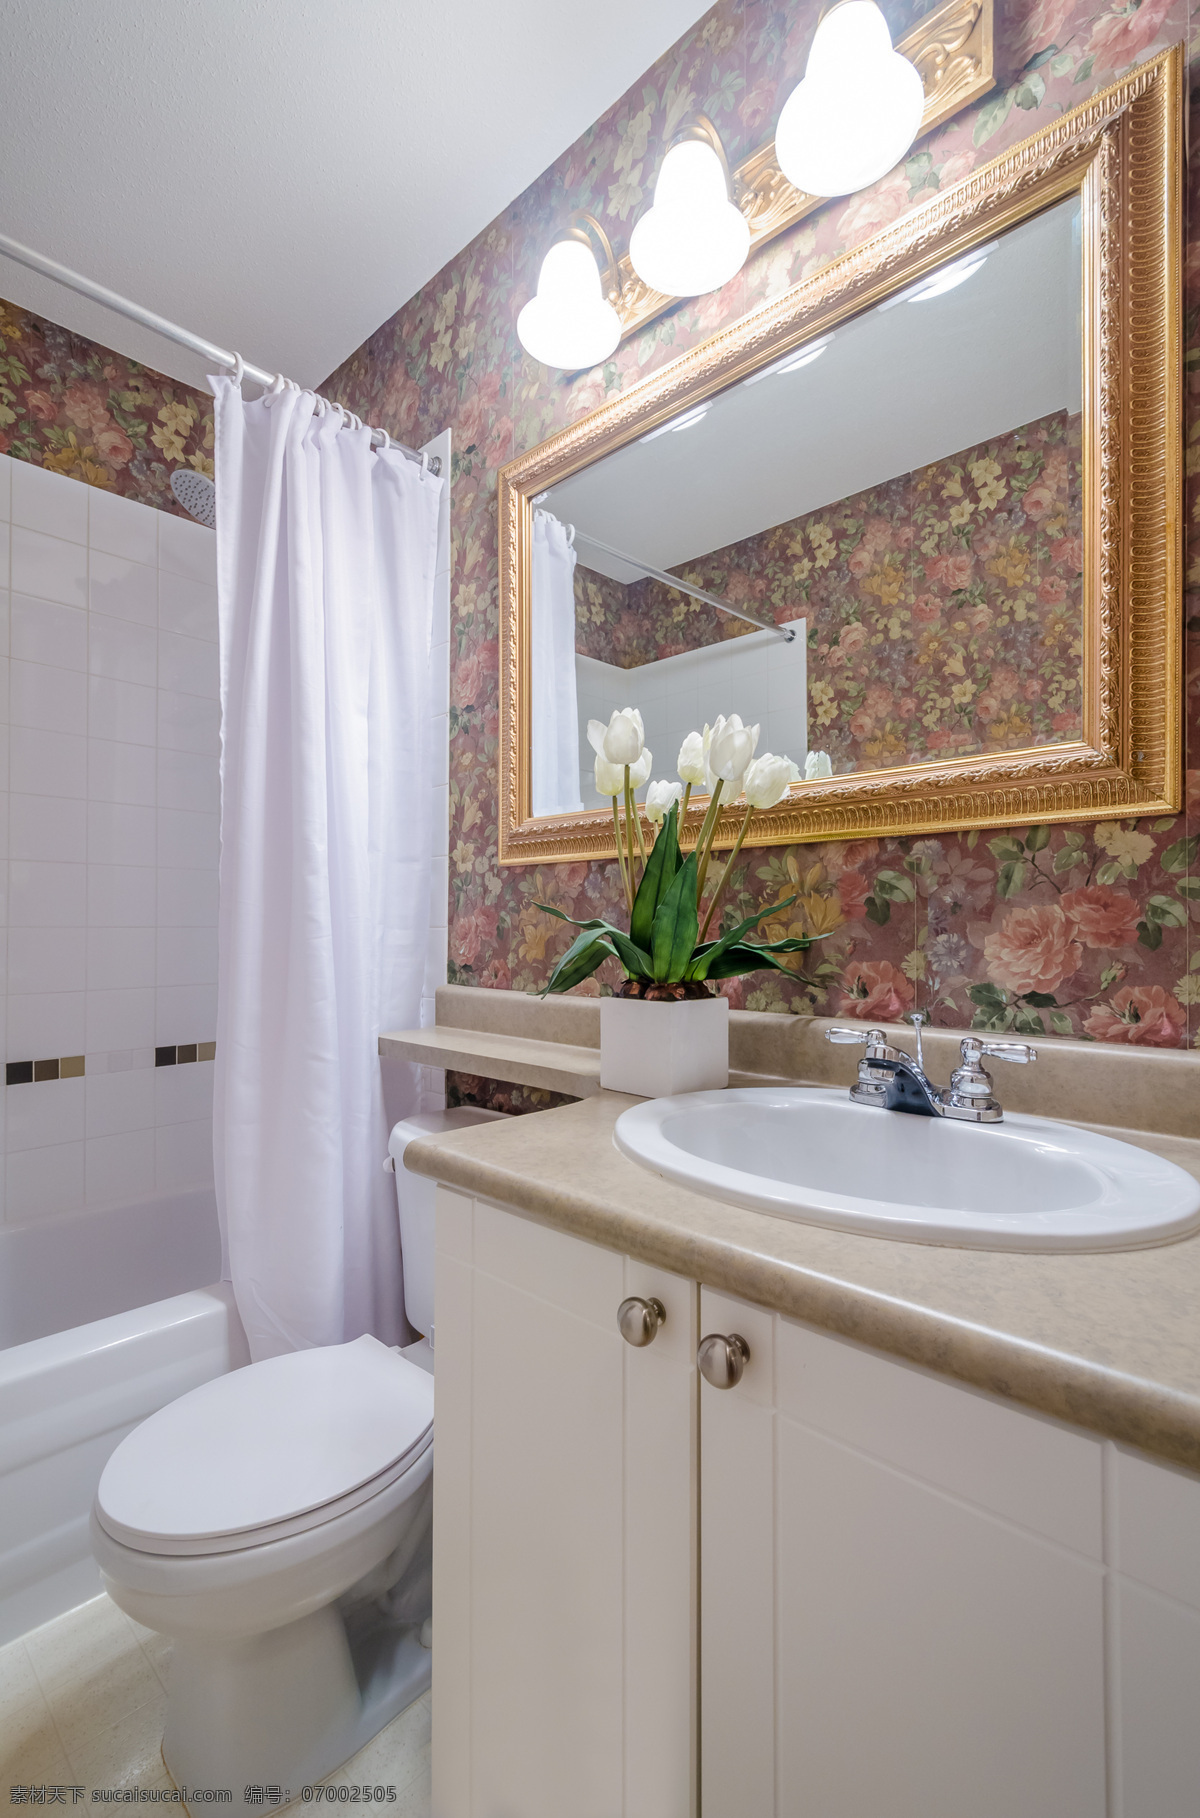 简约 卫生间 设计图 洗手间 效果图 装修图 室内设计 环境家居